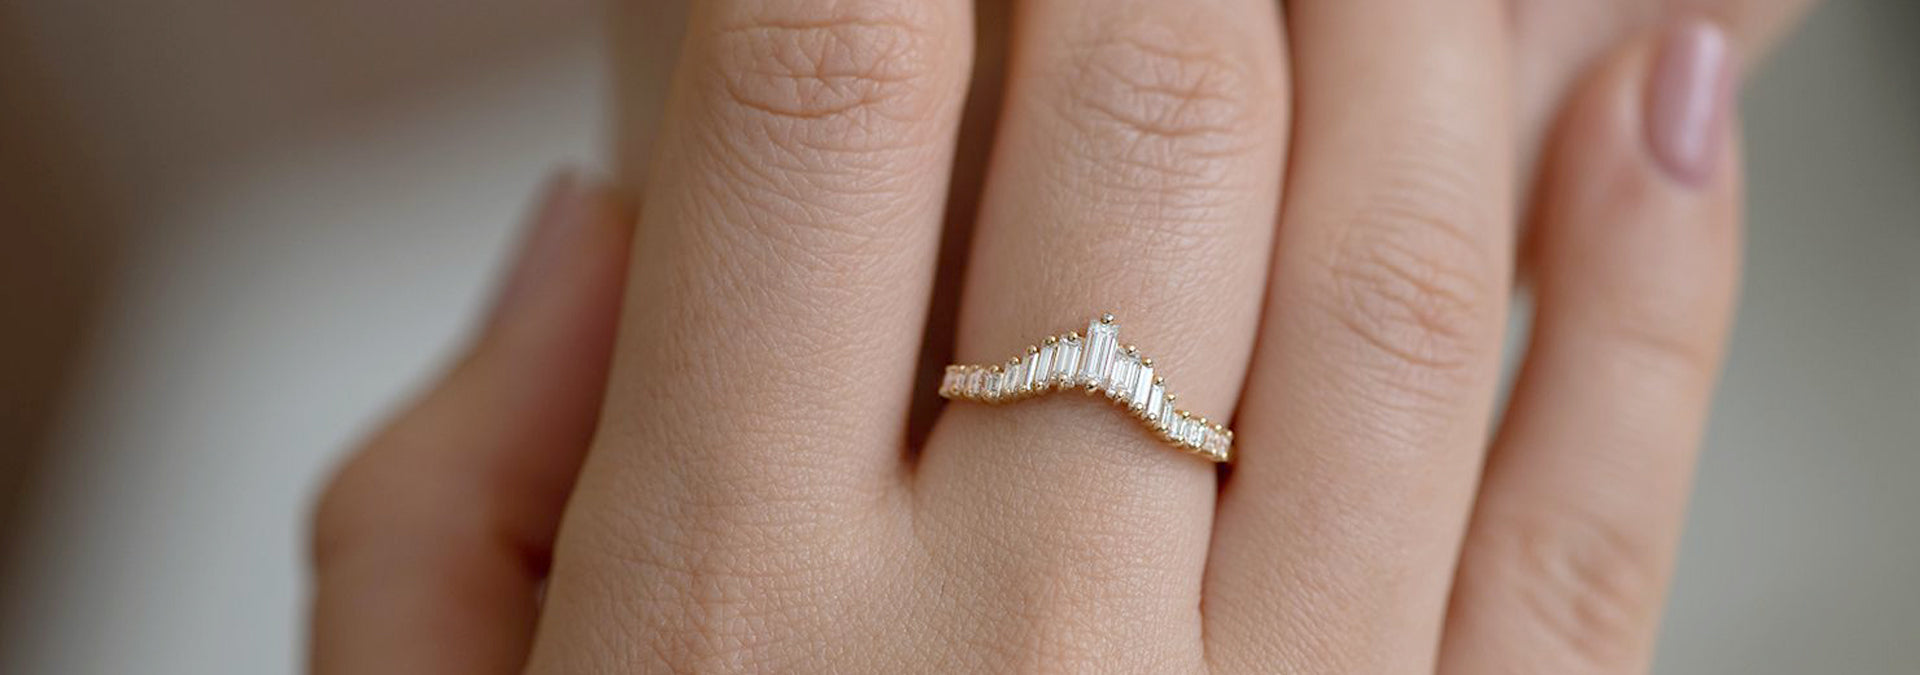 Wedding Rings With Gemstones